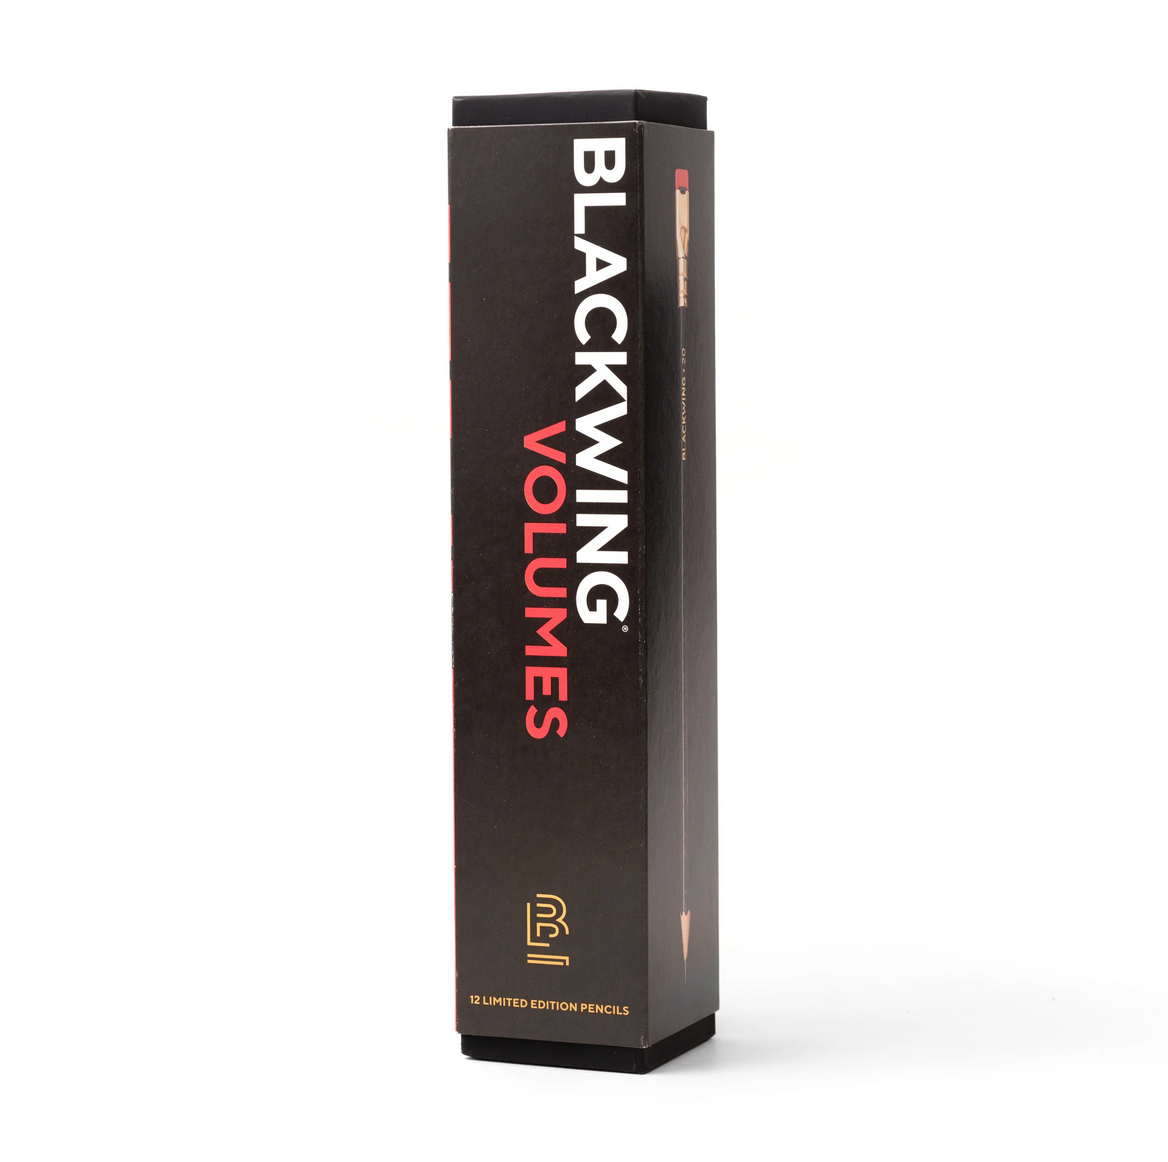 Blackwing Vol. 20 – Juegos de mesa (ed. limitada)